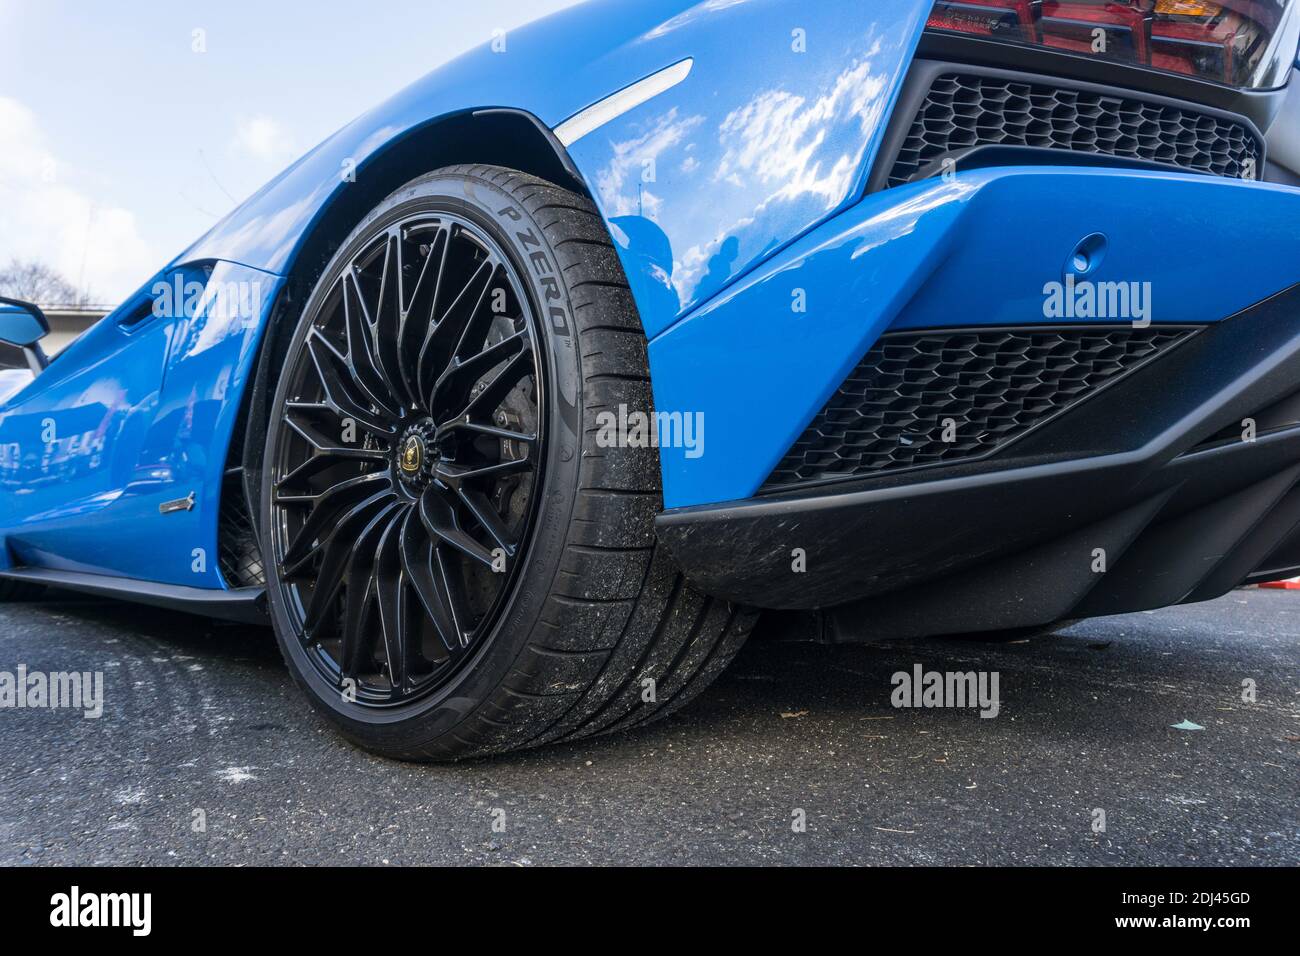 Ruota posteriore Dianthus di una lamborghini lamborghini lp740-4 blu le mans Aventador S con ruota, arco e lato posteriore Foto Stock